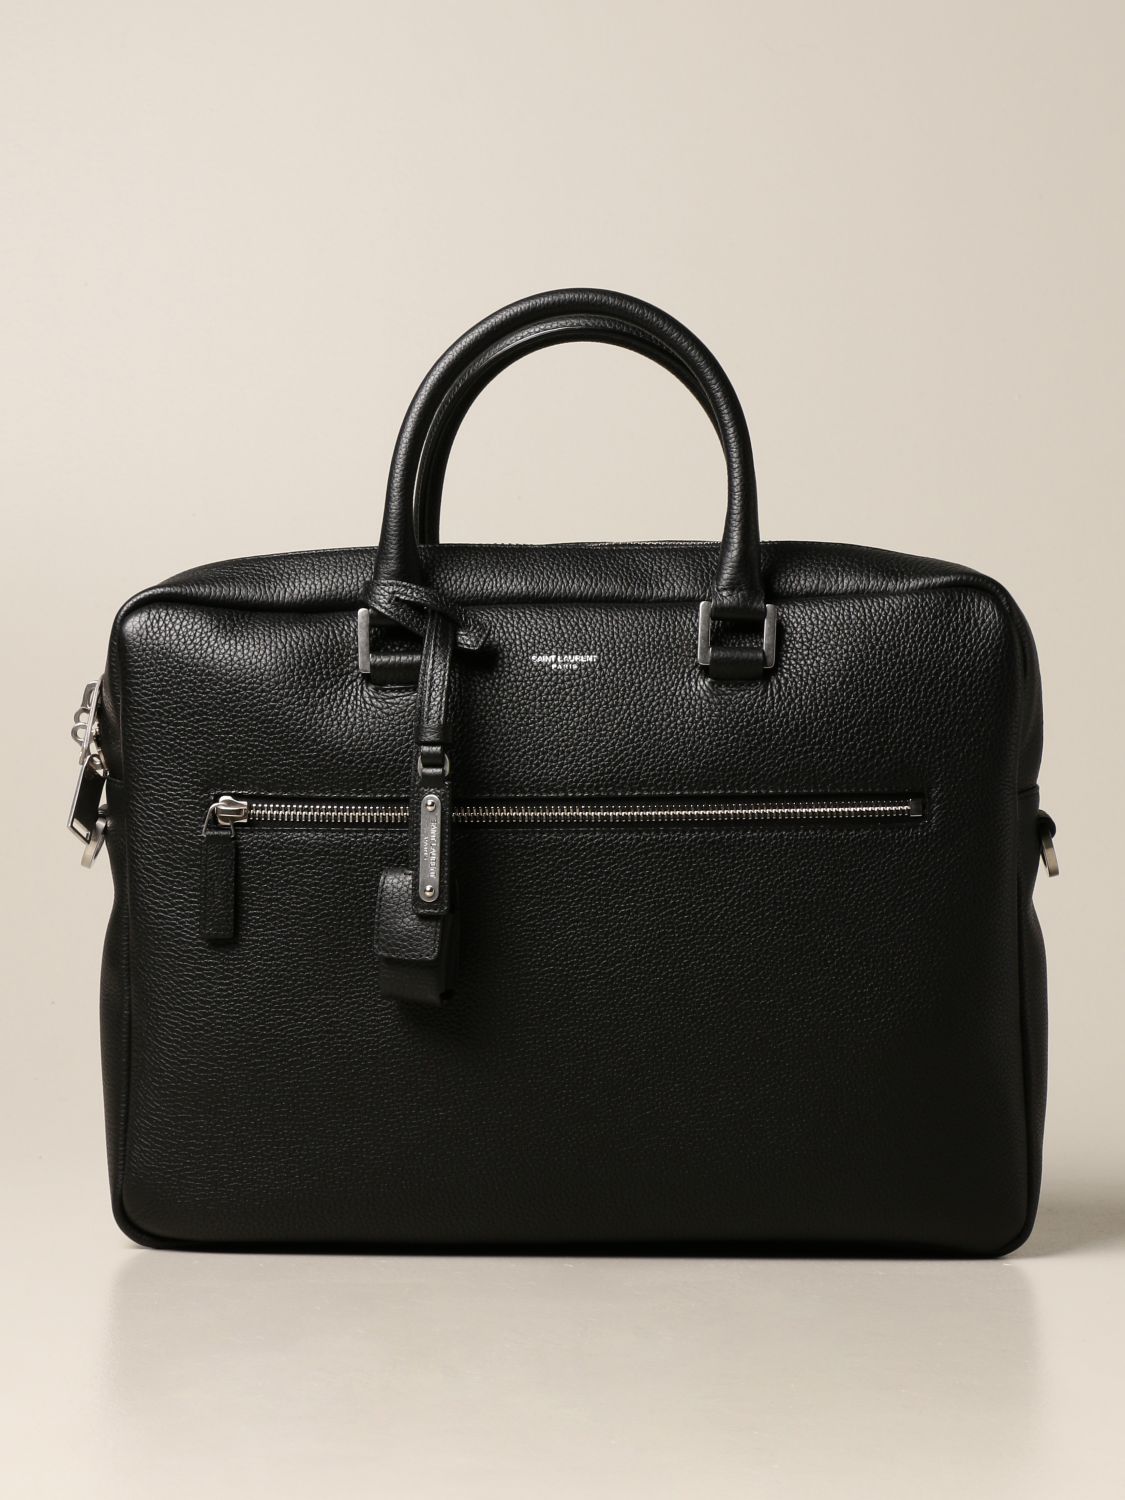 SAINT LAURENT: bags for man - Black | Saint Laurent bags 480586 DTI0E ...